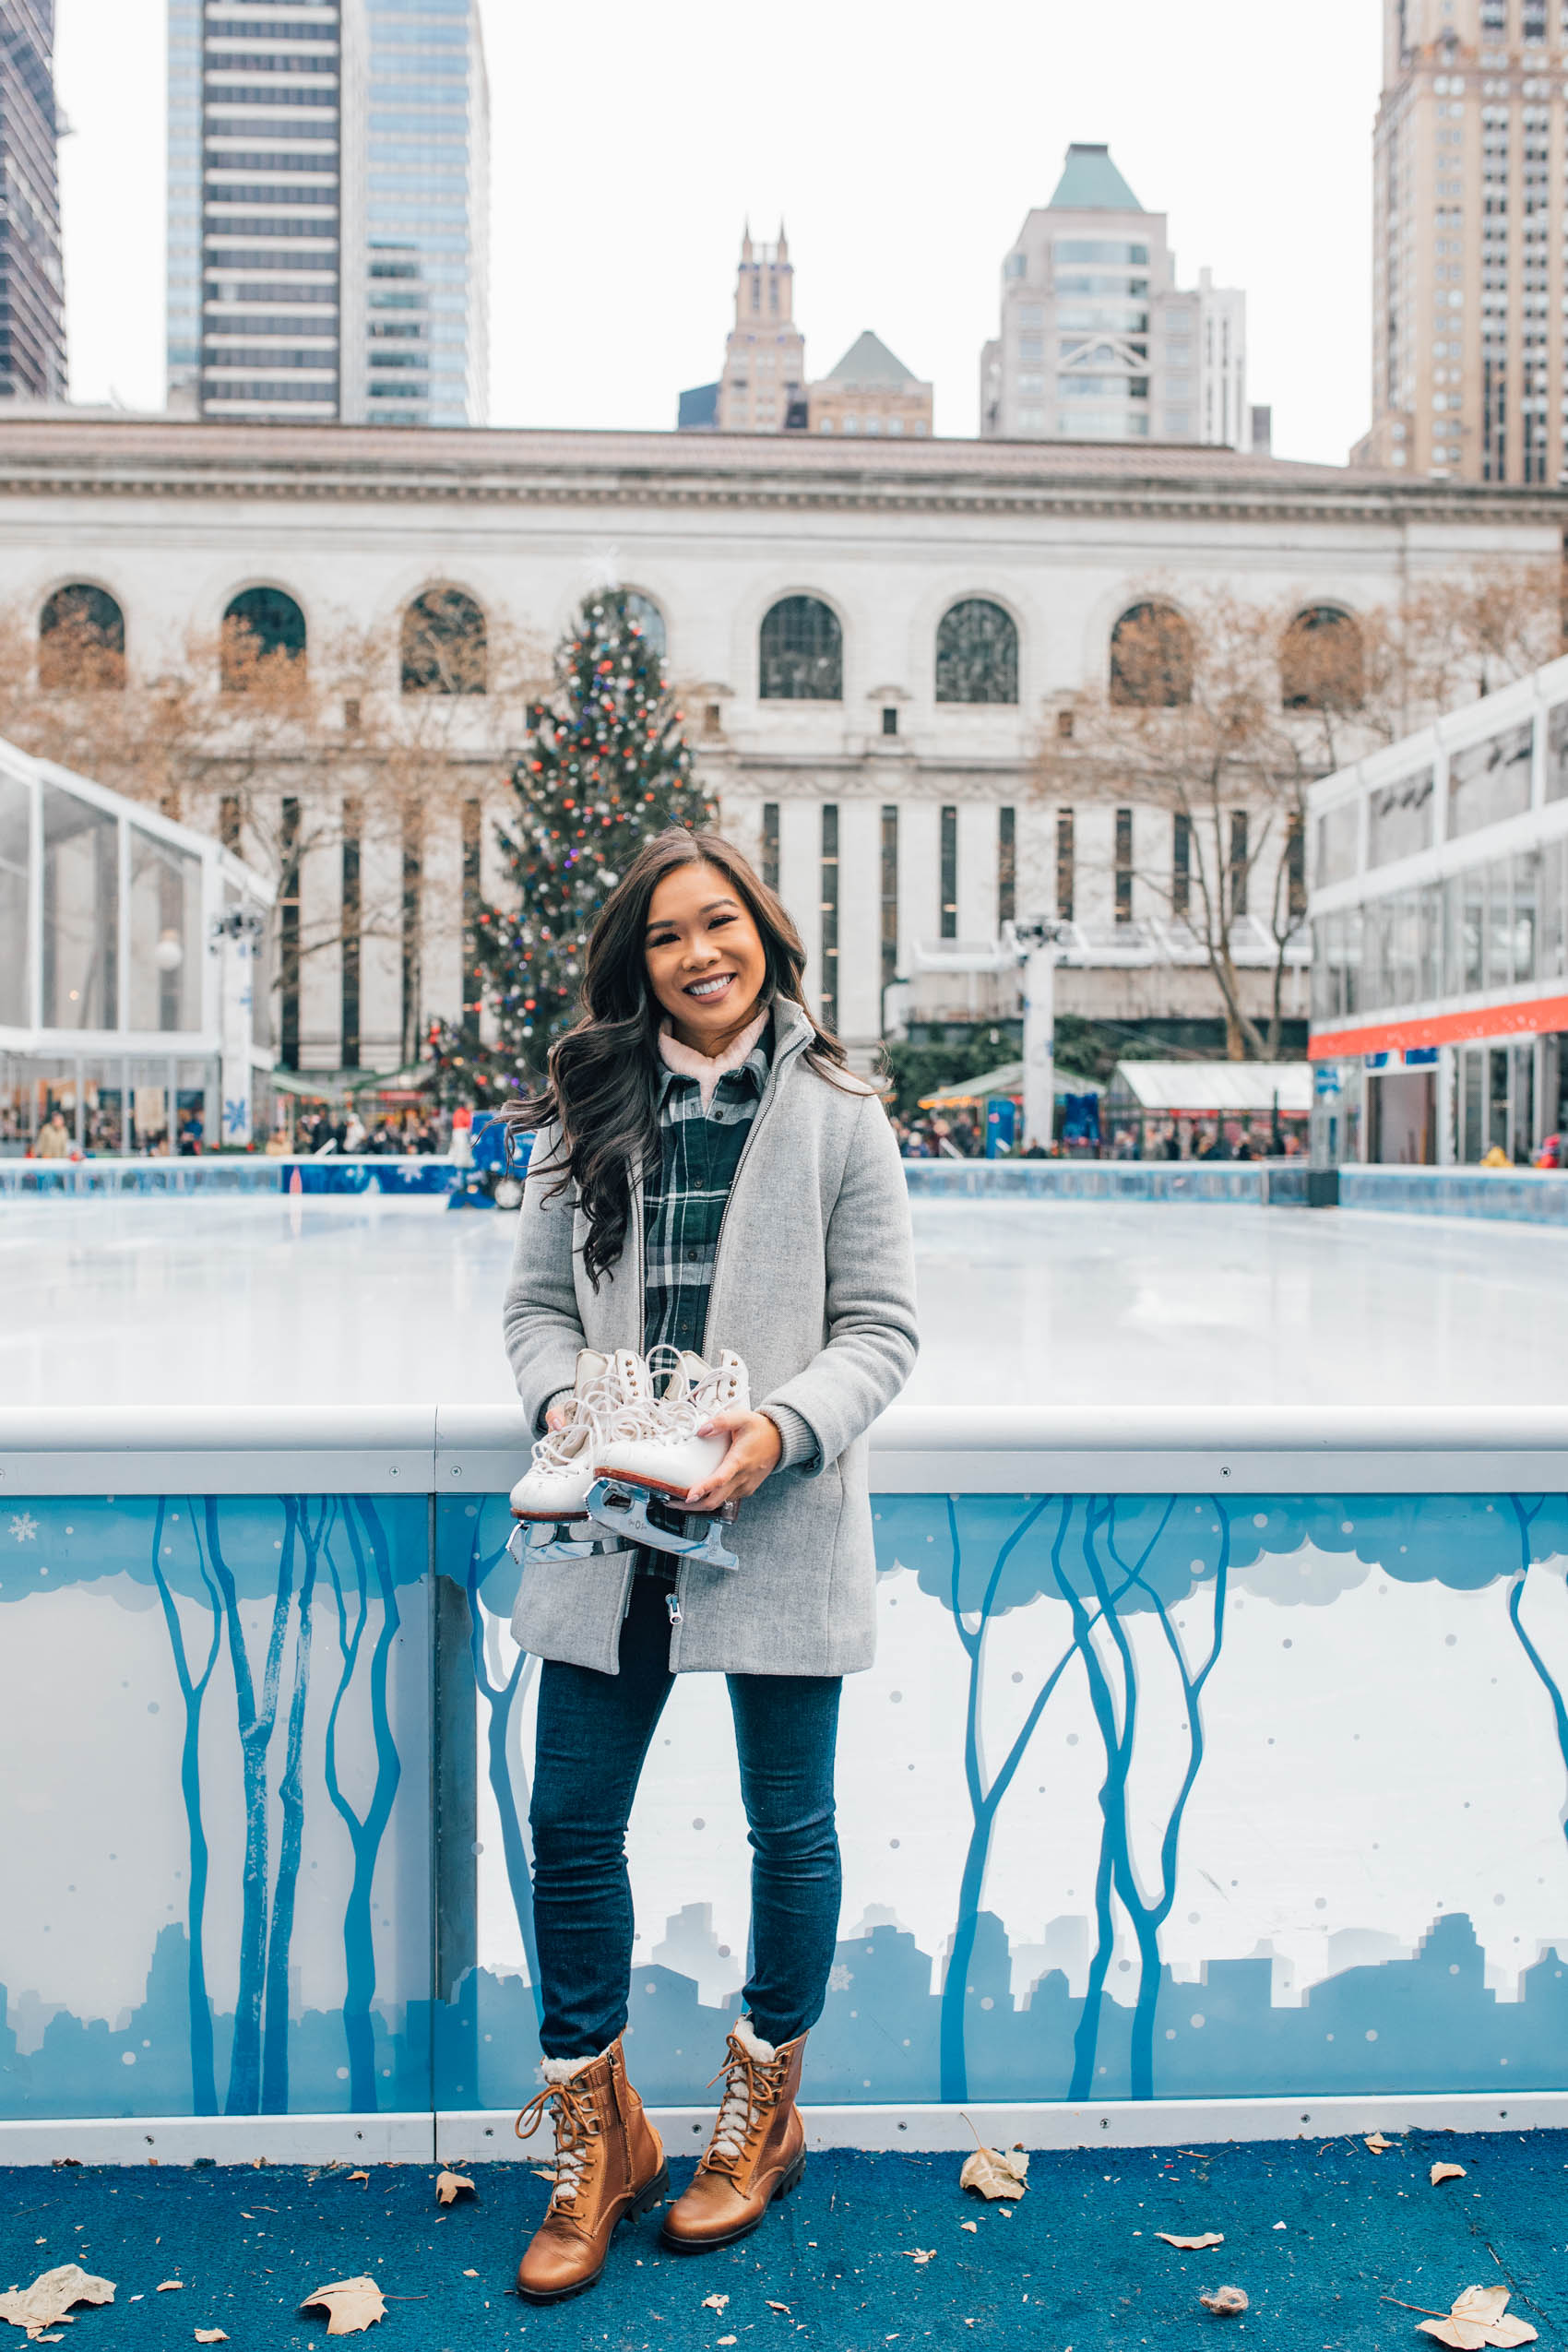 New York City Travel Guide: Hoang-Kim goes ice skating at Bryant Park 